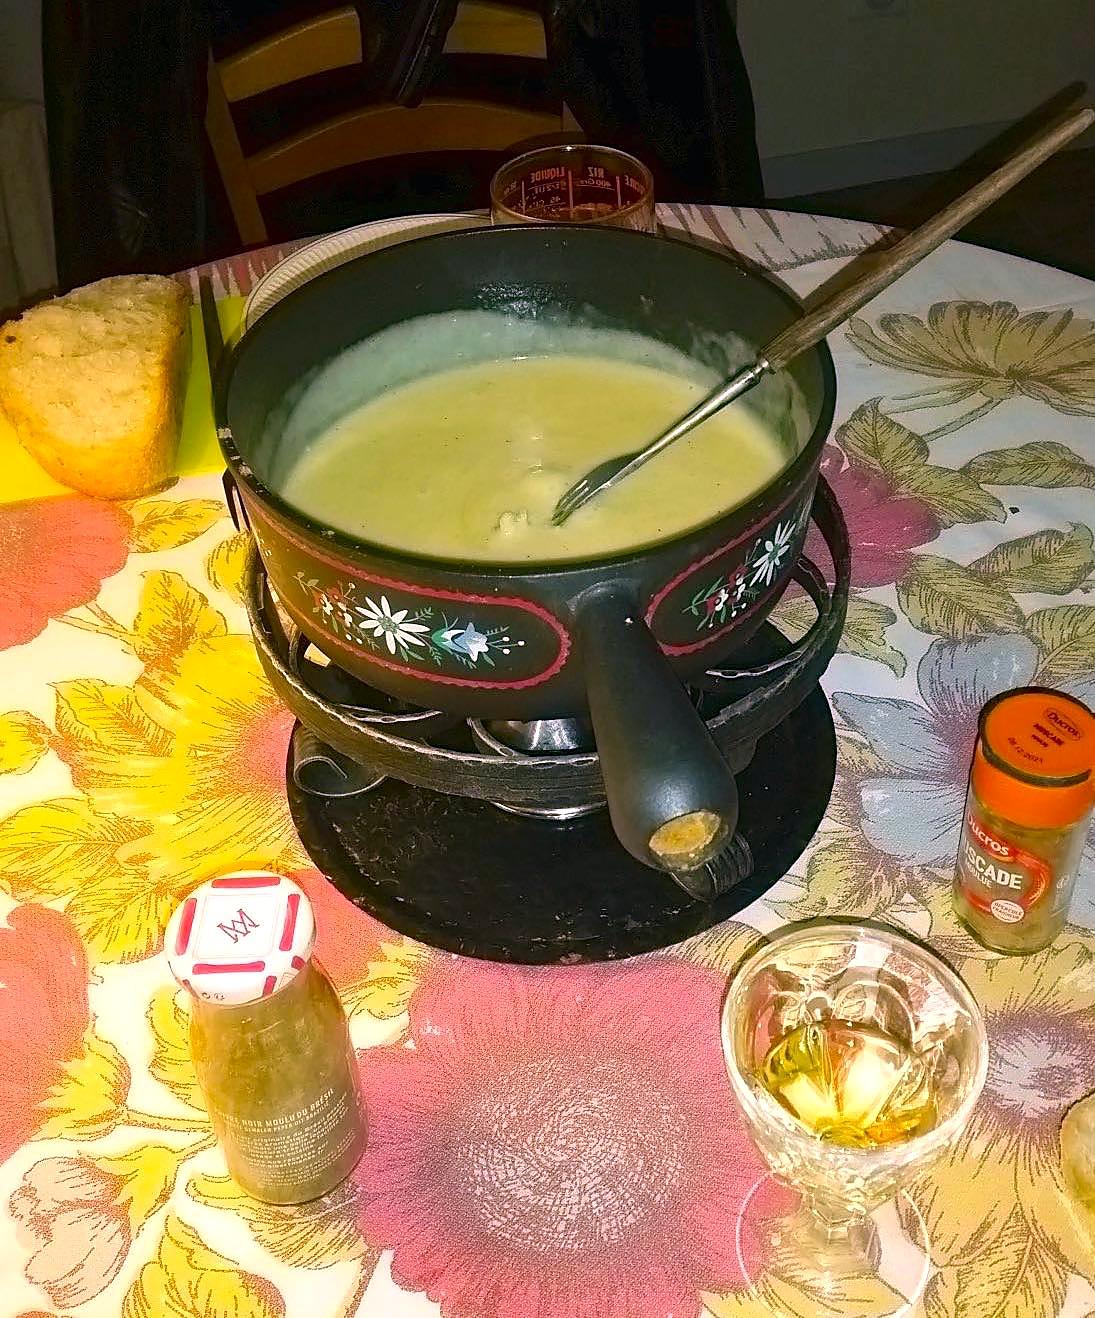 recette Fondue au fromage de la Vallée de Joux (Suisse), ou "fondue sans soucis"